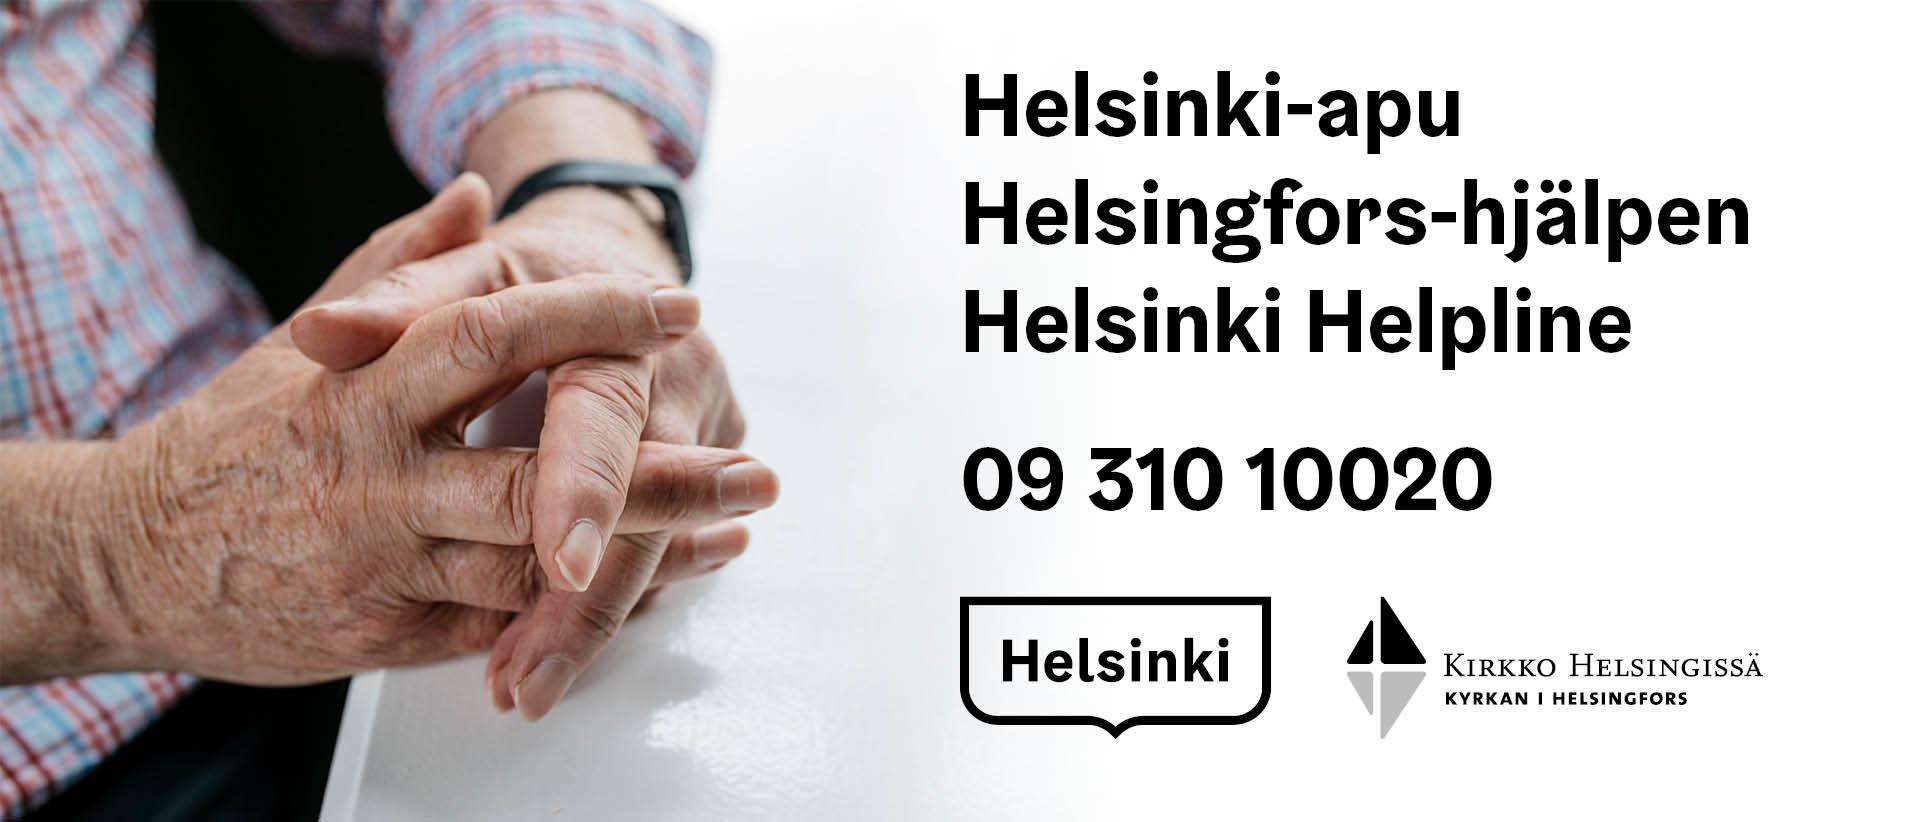 Kuvassa vanhan ihmisen kädet ristissä ja teksti Helsinki-apu ja puhelinnumero 09 310 100 20